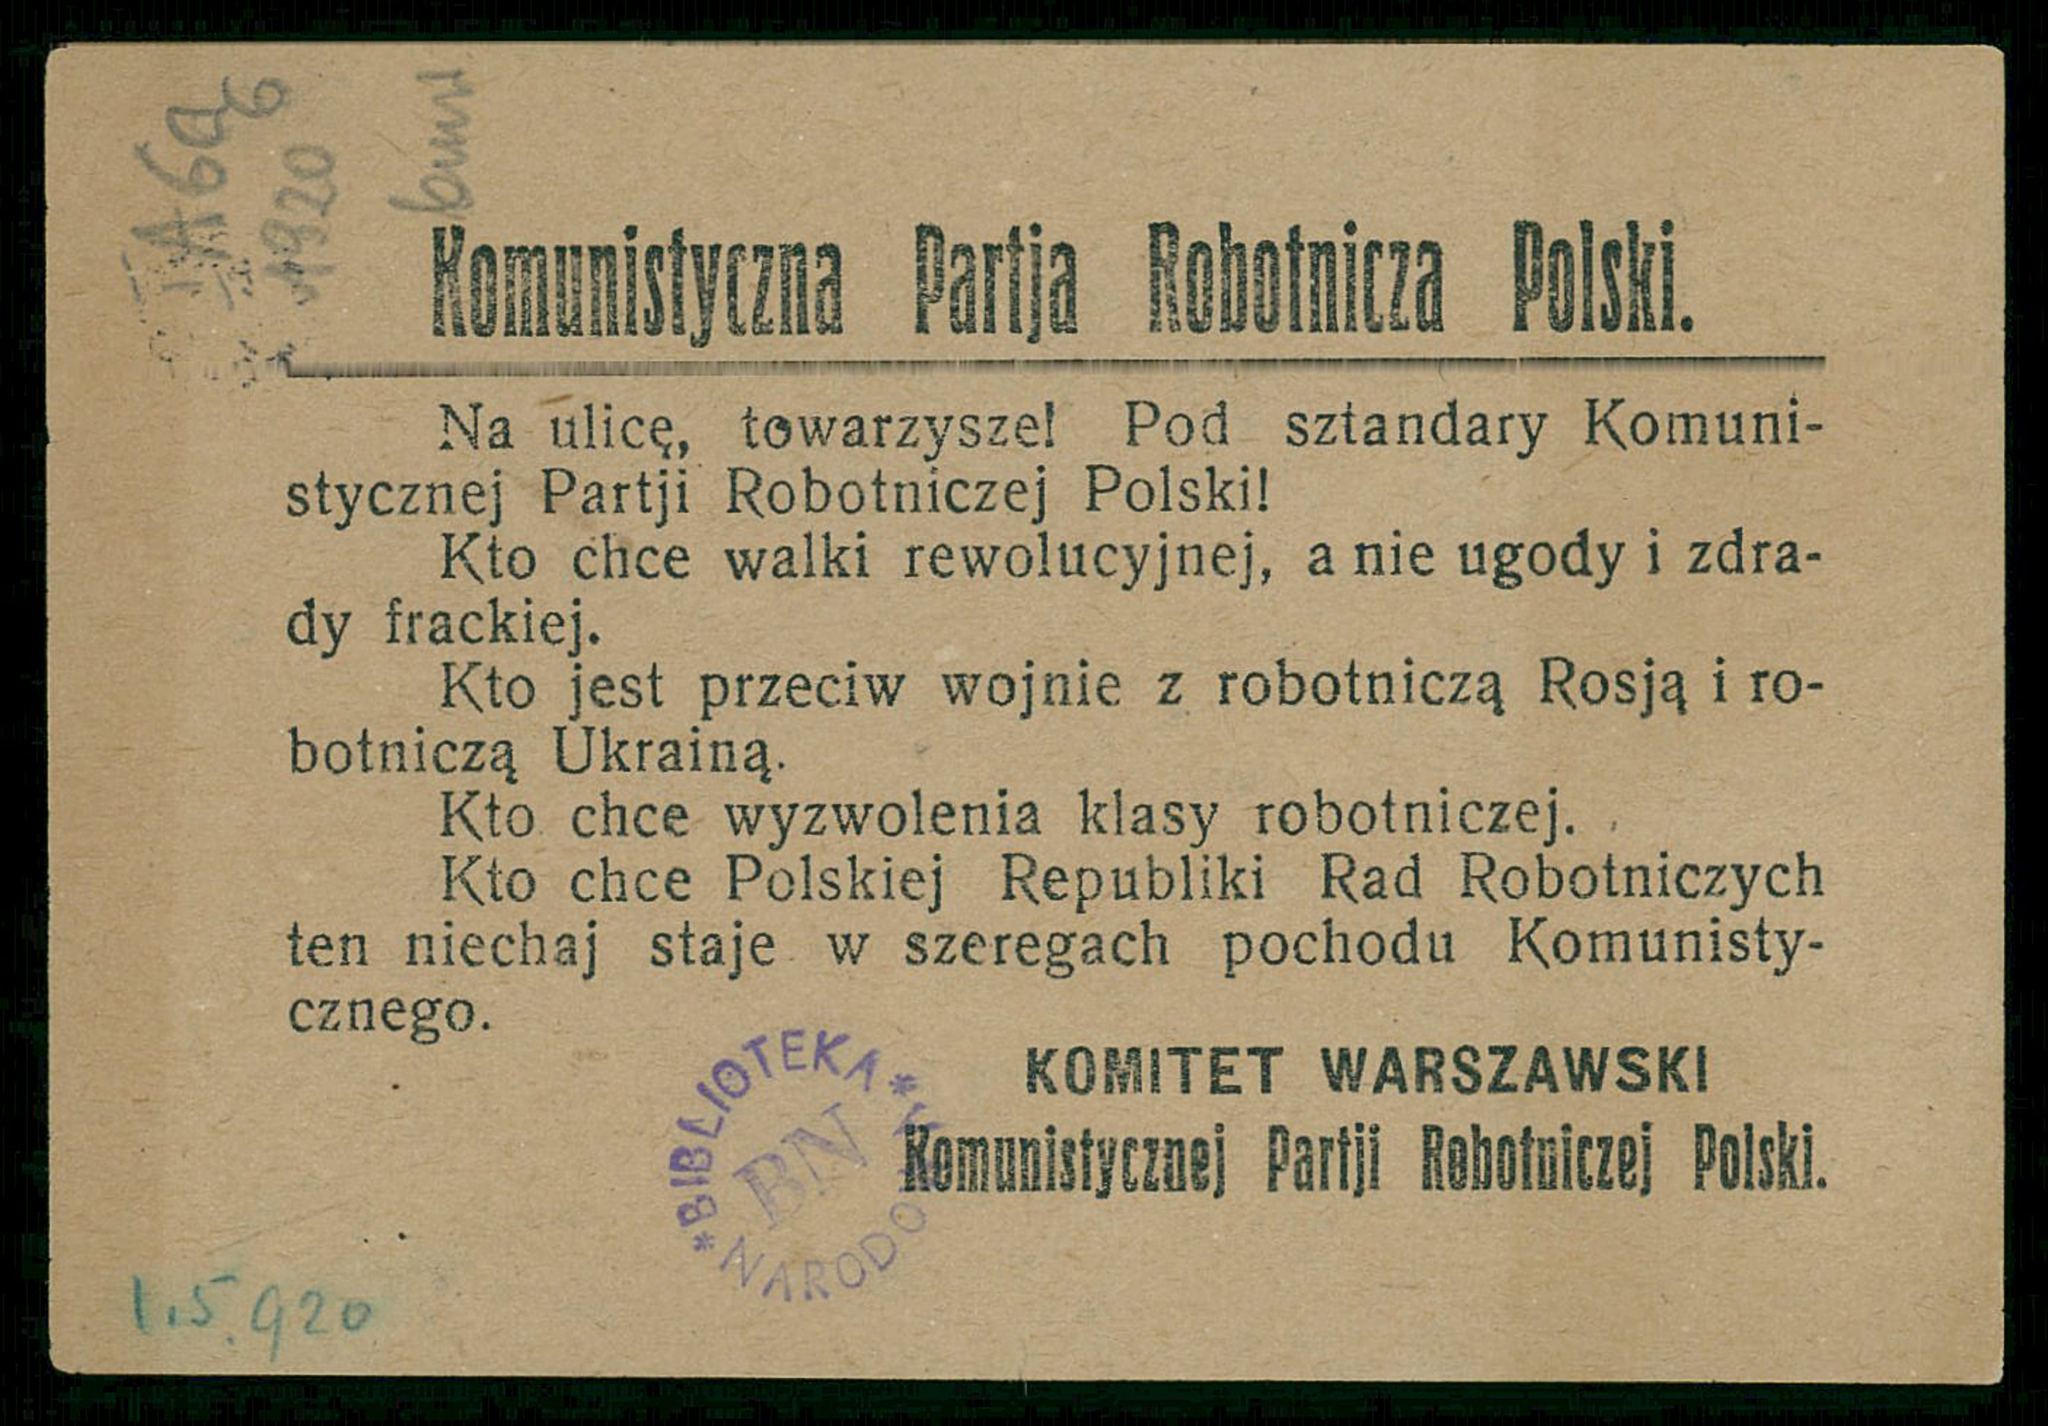 1920. Ulotka Komunistycznej Partii Robotniczej Polski. Źródło: Biblioteka Narodowa